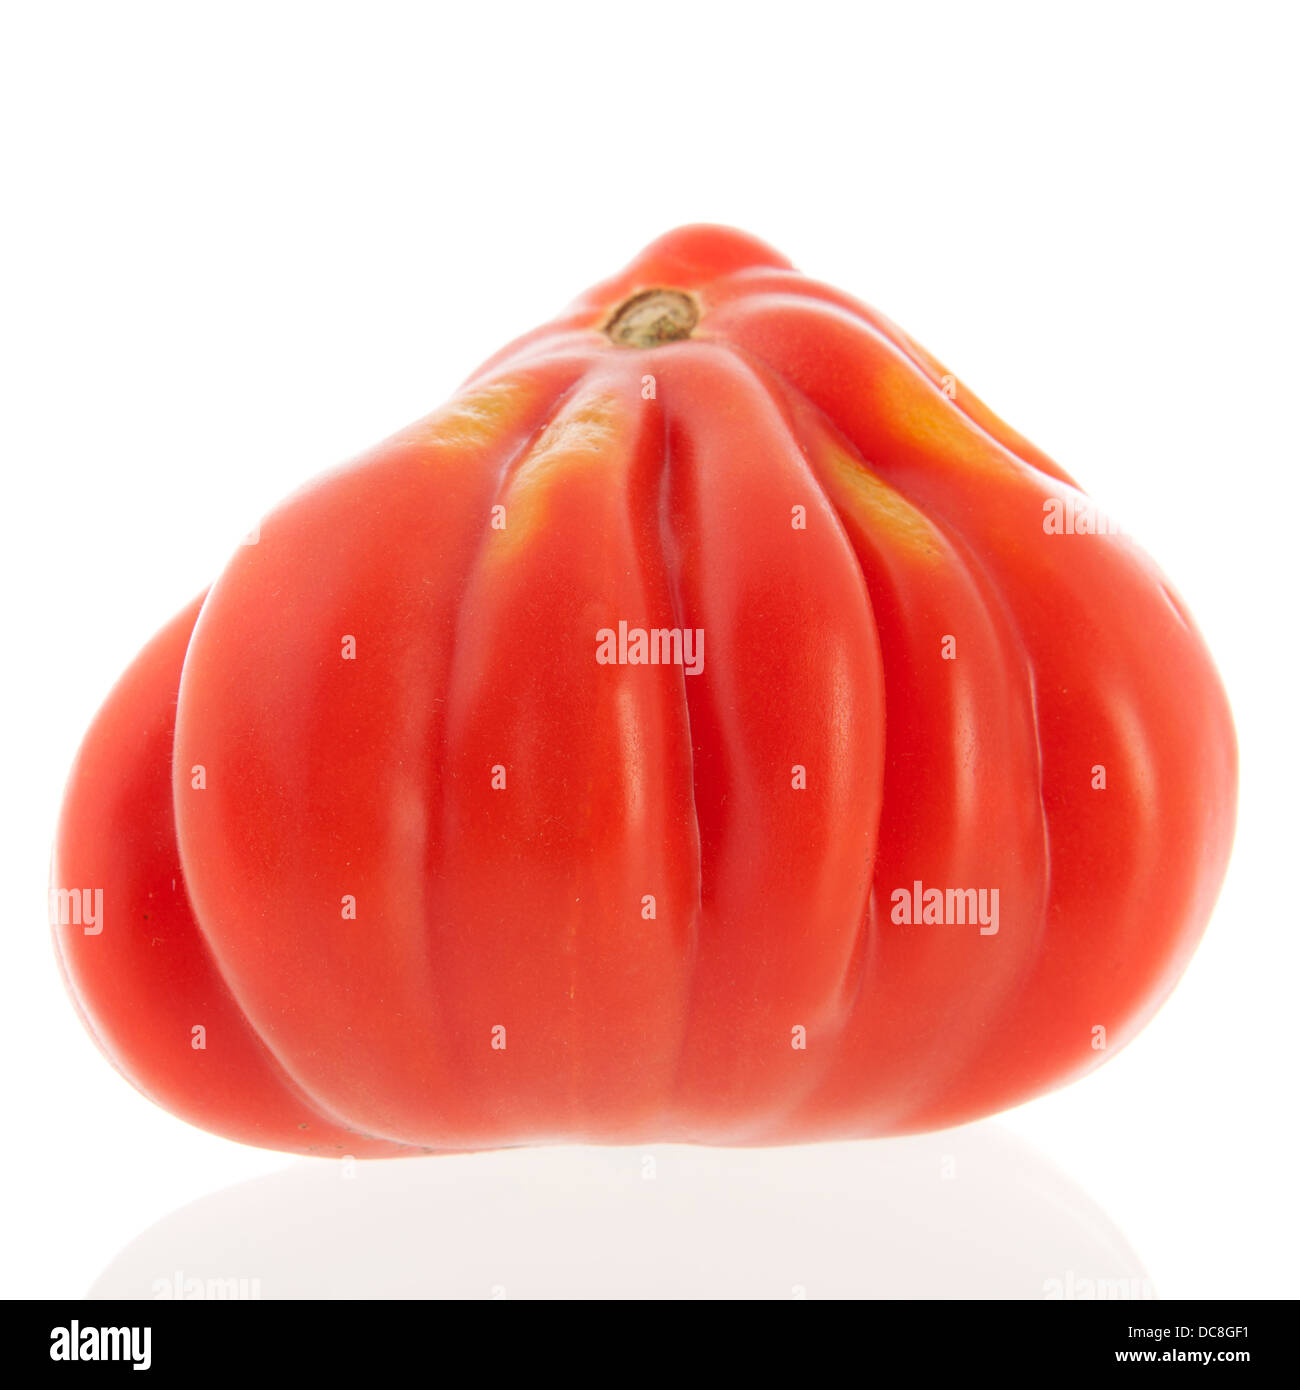 Coeur de boeuf pomodoro isolate su sfondo bianco Foto Stock